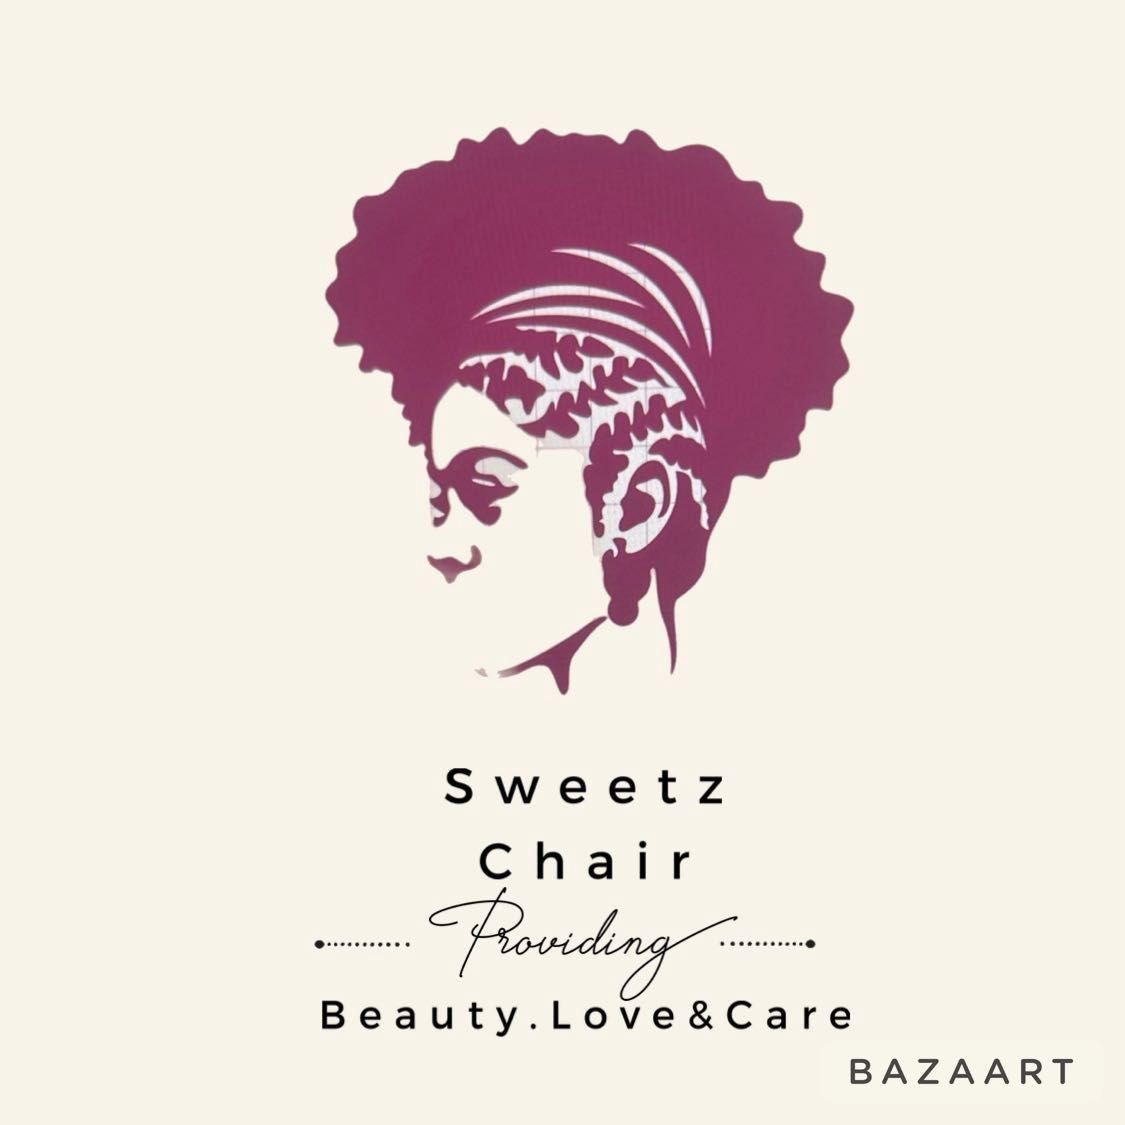 Sweet’z Chair, Savannah Ct, Byron, 31008